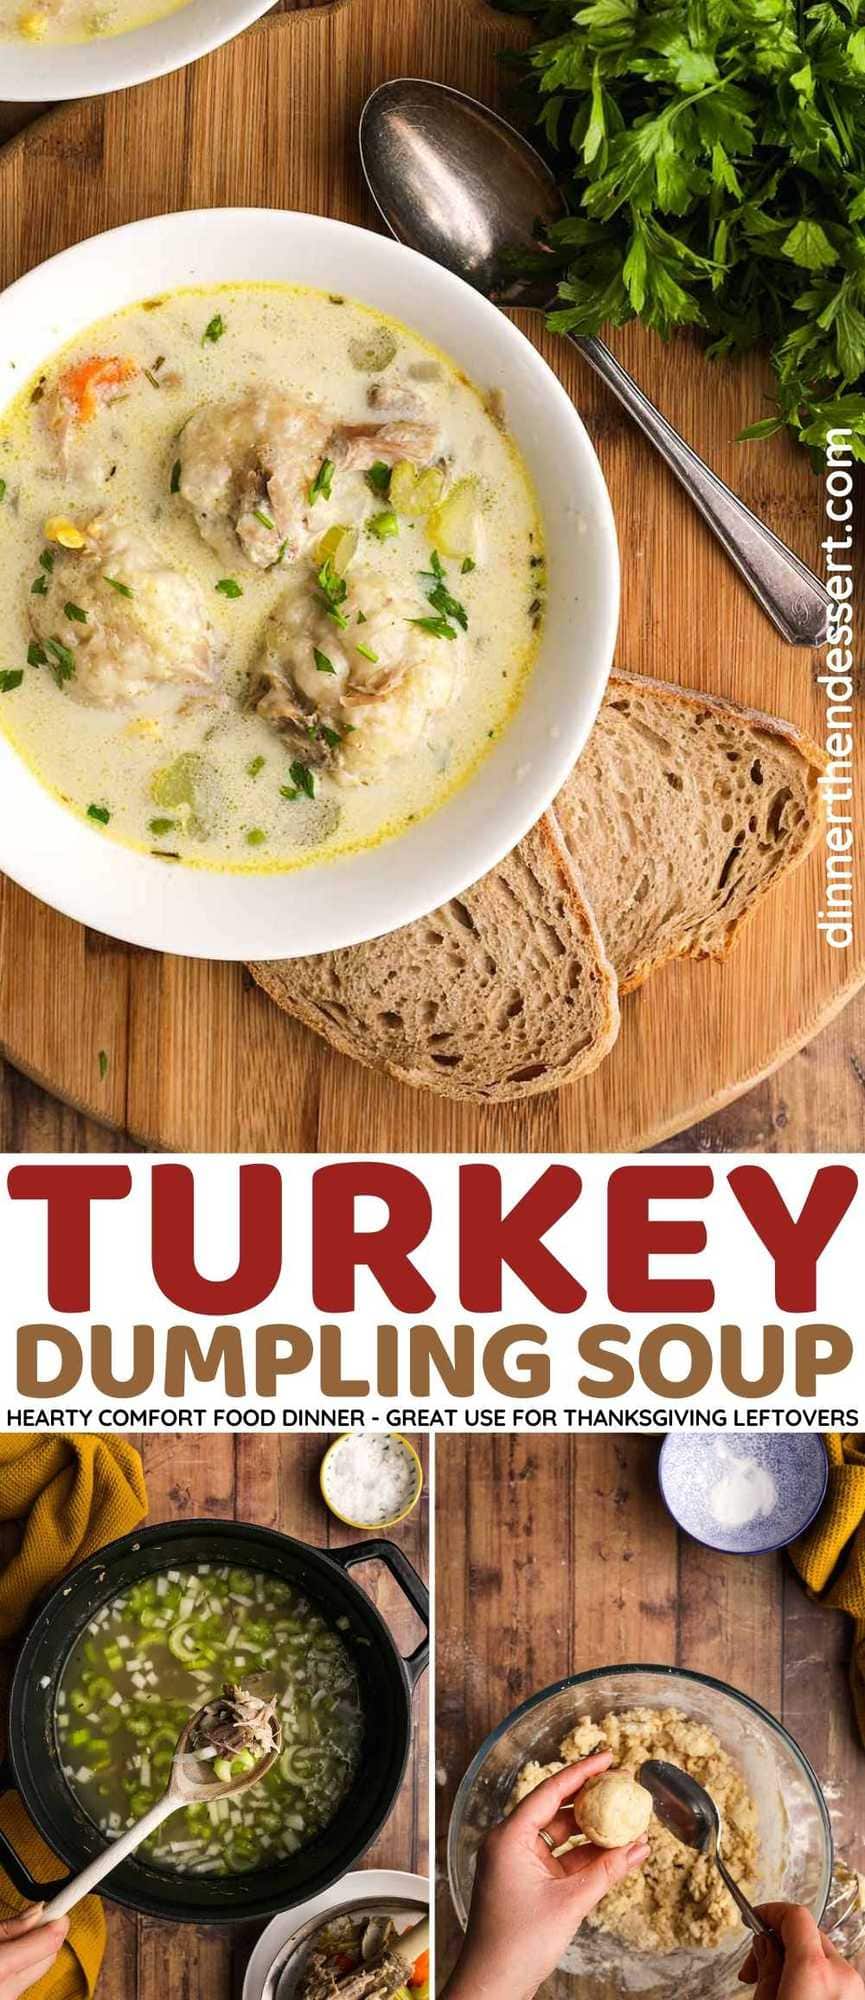 Turkey Dumpling Soup collage